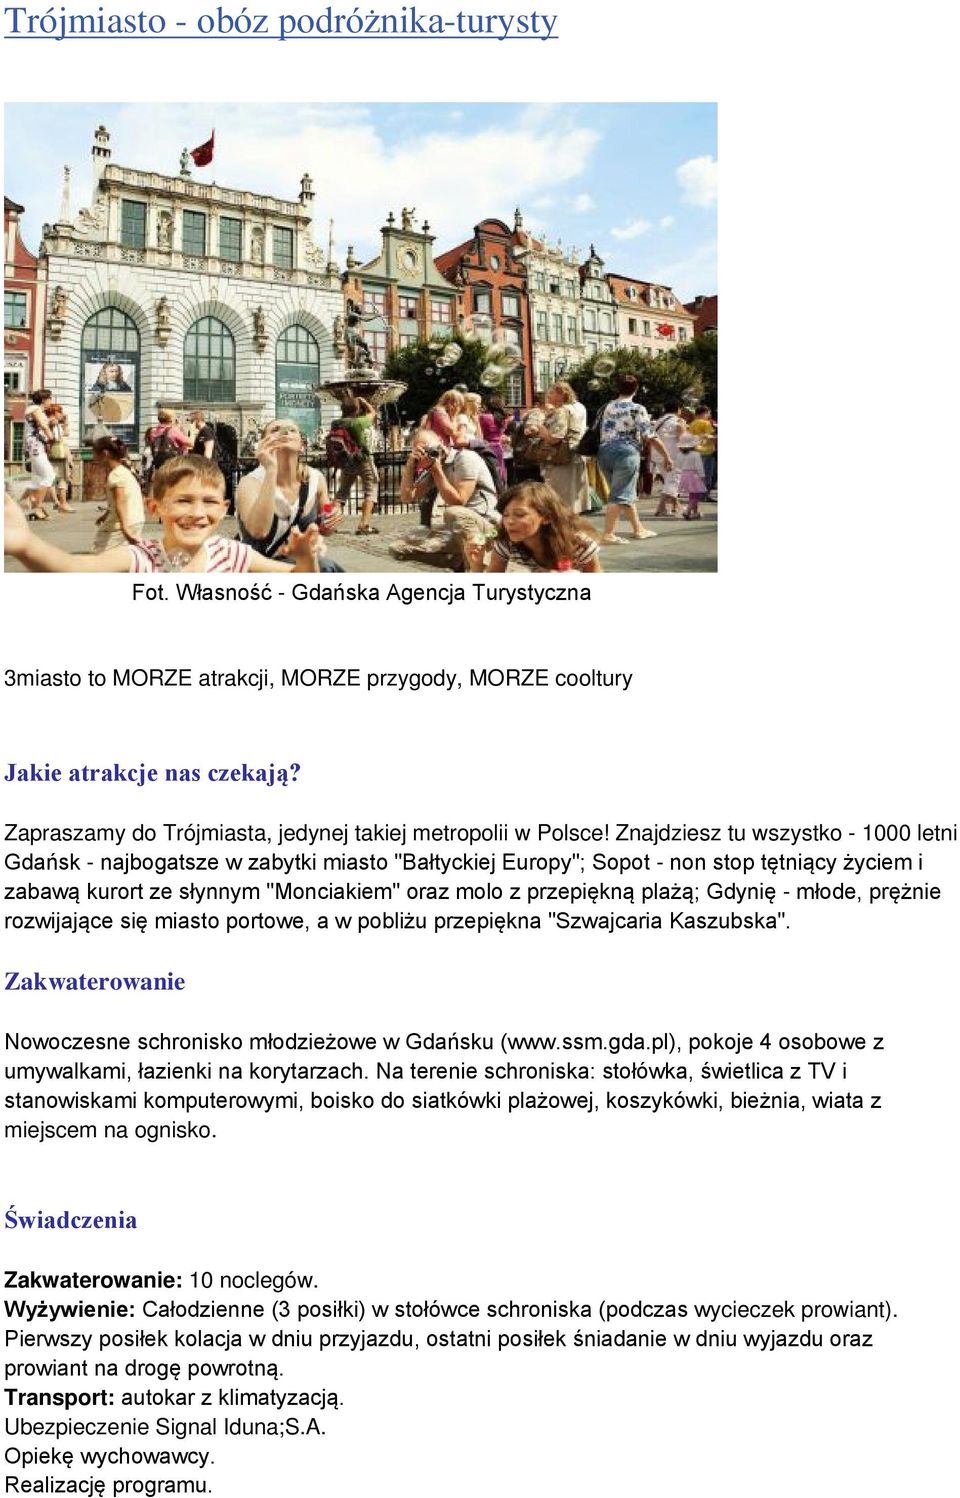 Znajdziesz tu wszystko - 1000 letni Gdańsk - najbogatsze w zabytki miasto "Bałtyckiej Europy"; Sopot - non stop tętniący życiem i zabawą kurort ze słynnym "Monciakiem" oraz molo z przepiękną plażą;